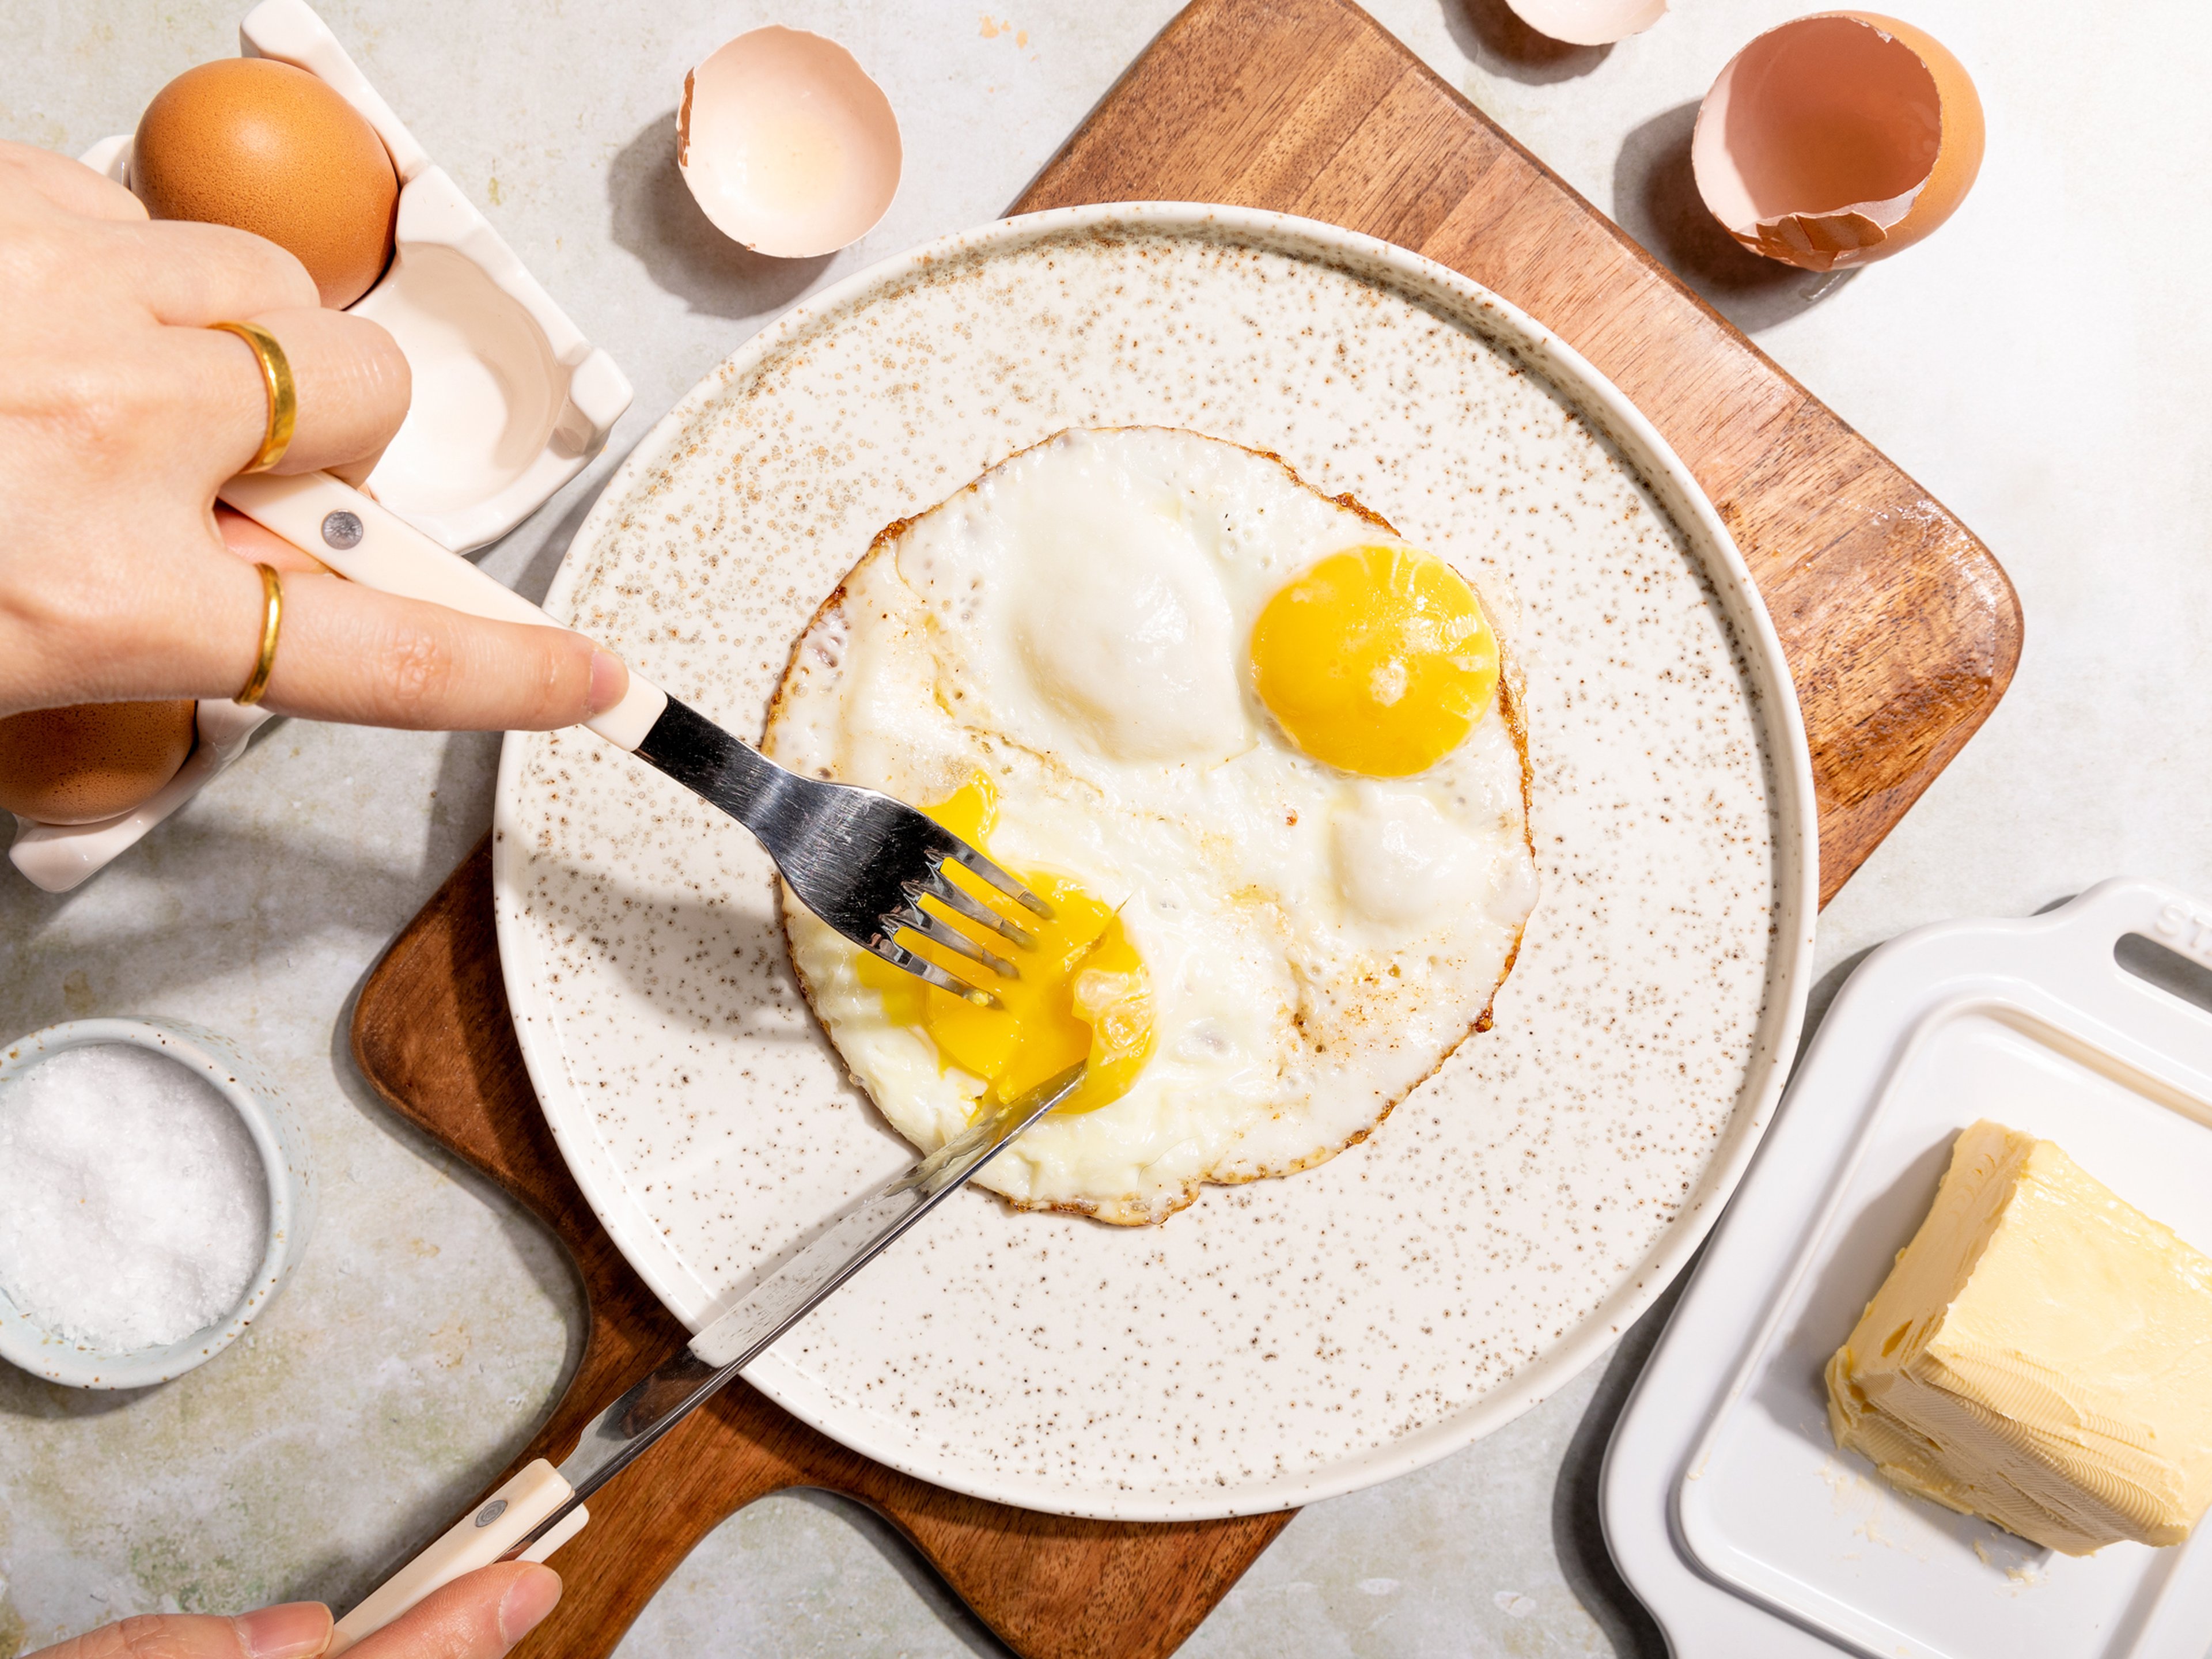 Mit diesen 6 günstigen Eier-Gadgets meisterst du jede Eierspeise!